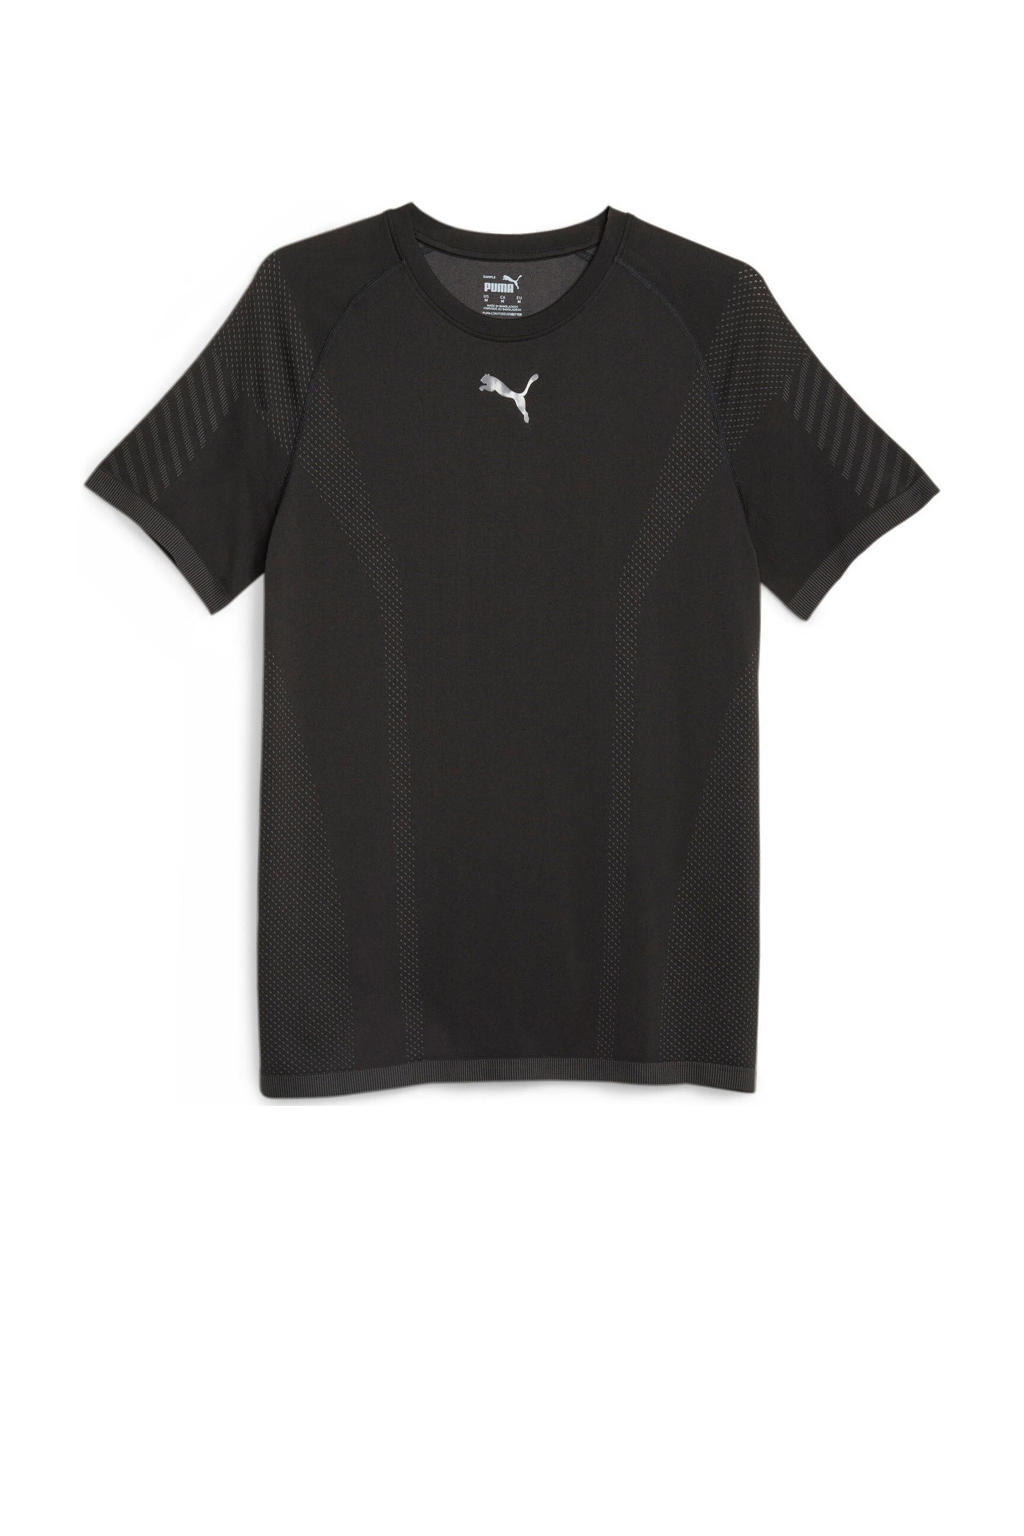 Zwarte heren Puma sport T-shirt van polyester met logo dessin, korte mouwen en ronde hals